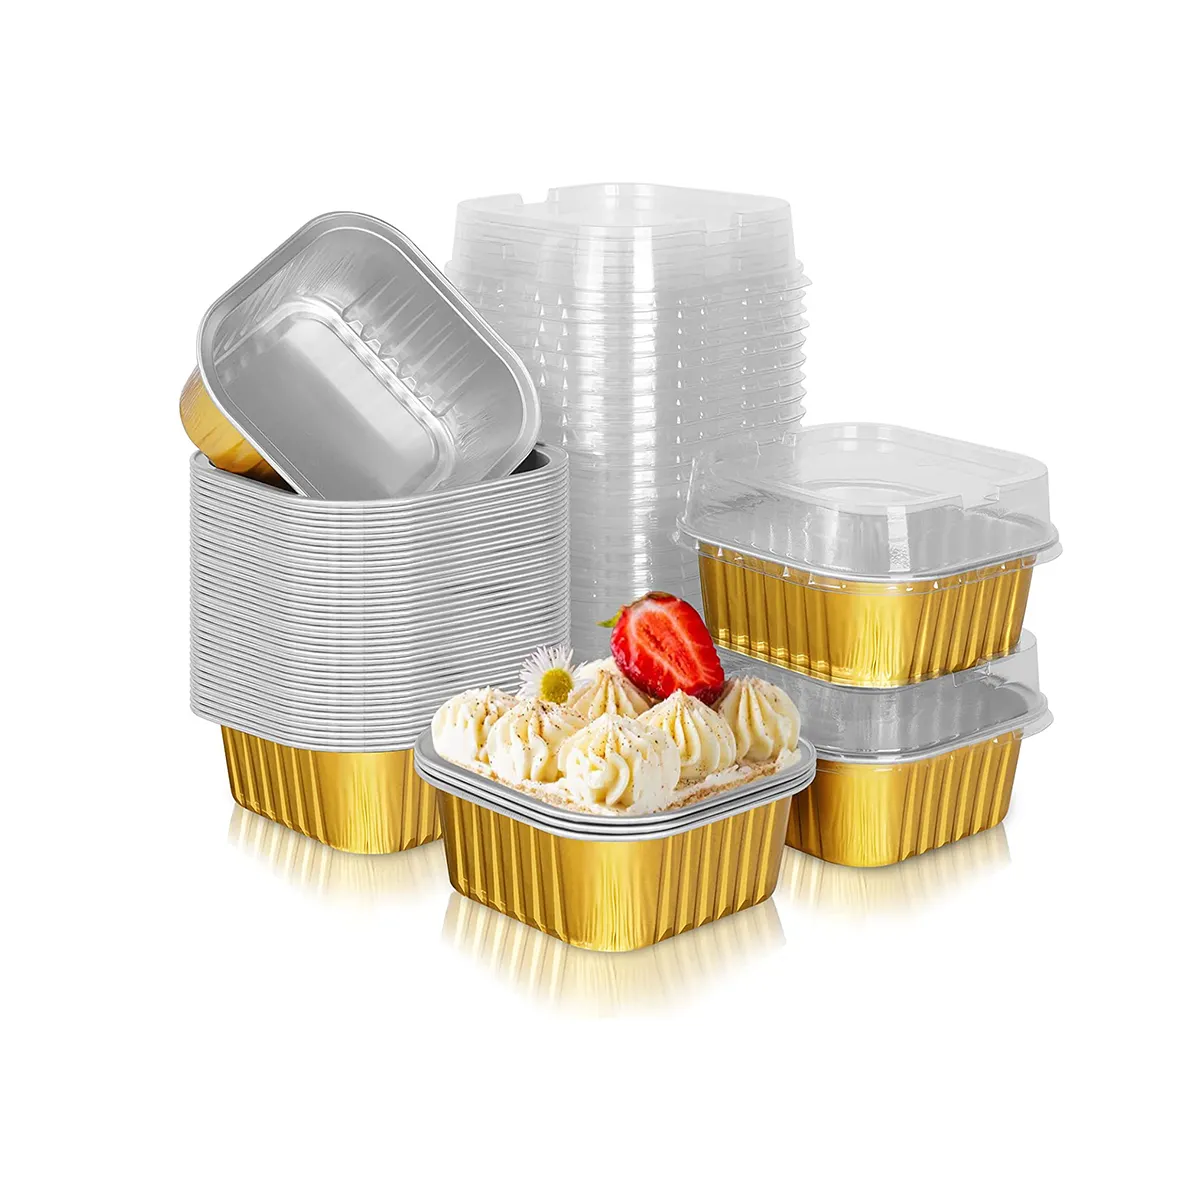 300ml Einweg-Folien behälter für Lebensmittel Verwenden Sie Aluminium Restaurant Take Away Box mit Deckel